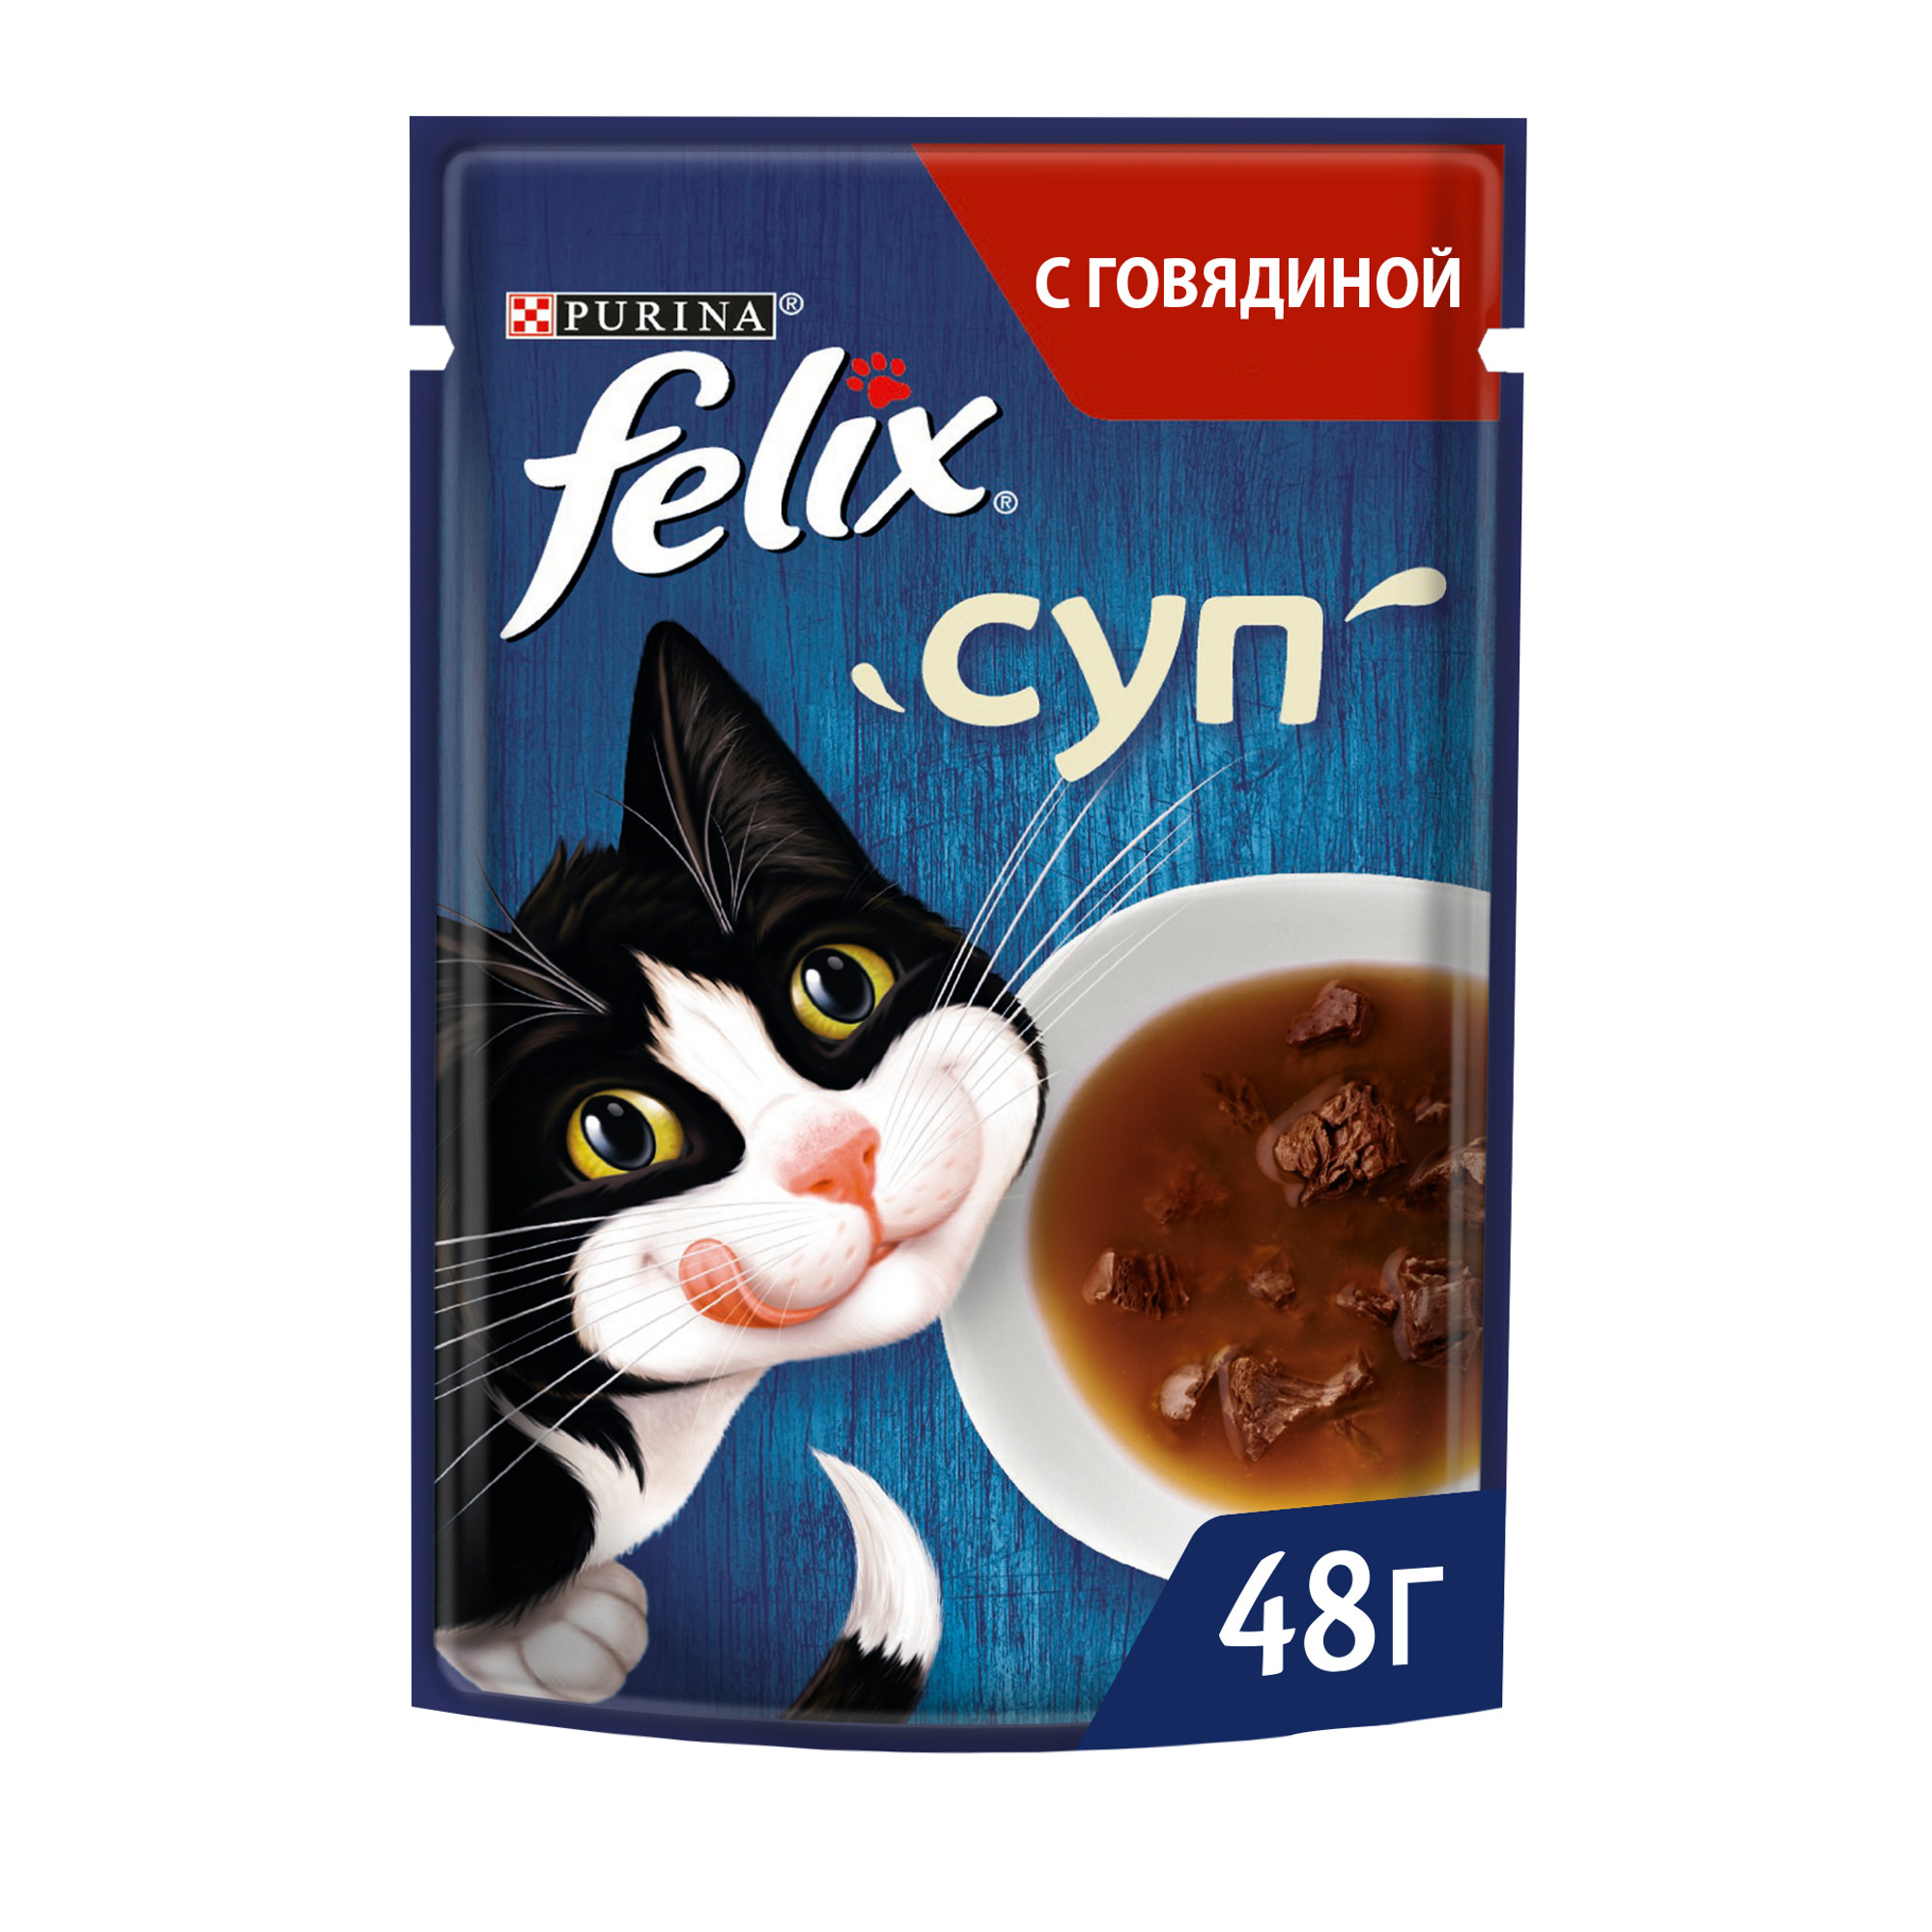 Влажный корм для кошек Felix Суп, для взрослых, говядина, 48г - купить в Мегамаркет Новосибирск, цена на Мегамаркет